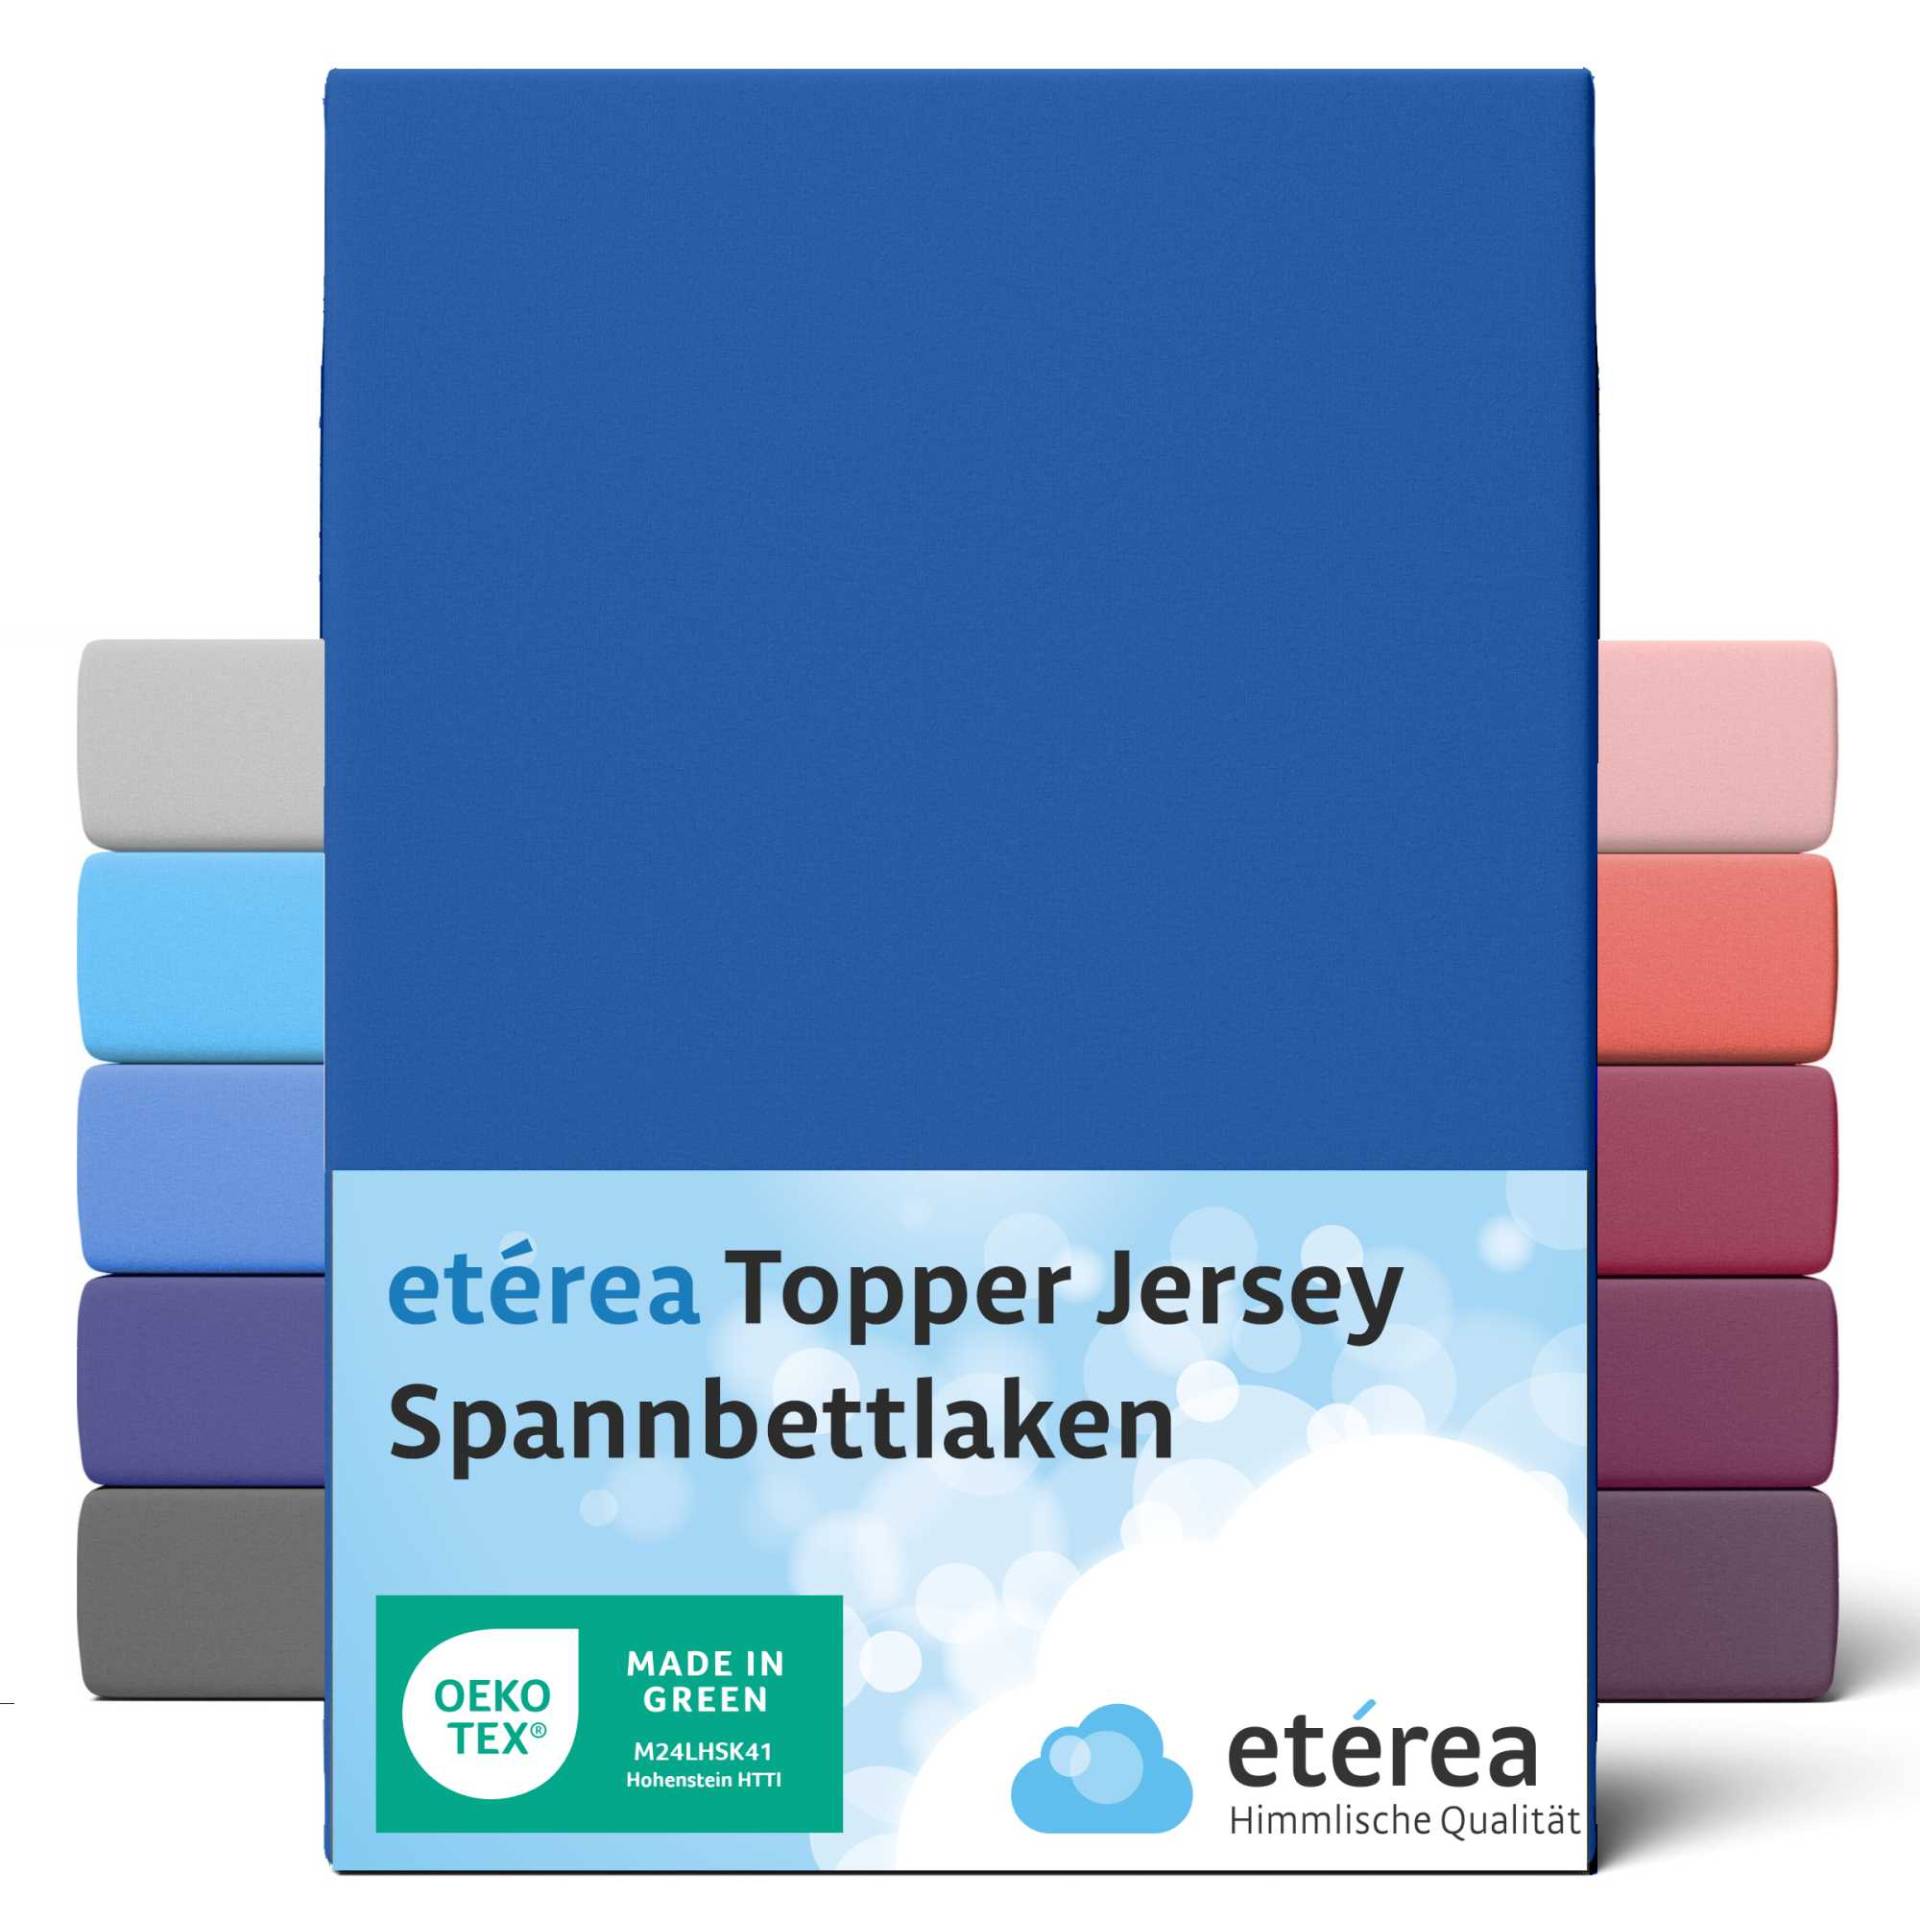 etérea Jersey Topper Spannbettlaken Spannbetttuch Blau 140x200 - 160x200 cm von etérea Himmlische Qualität